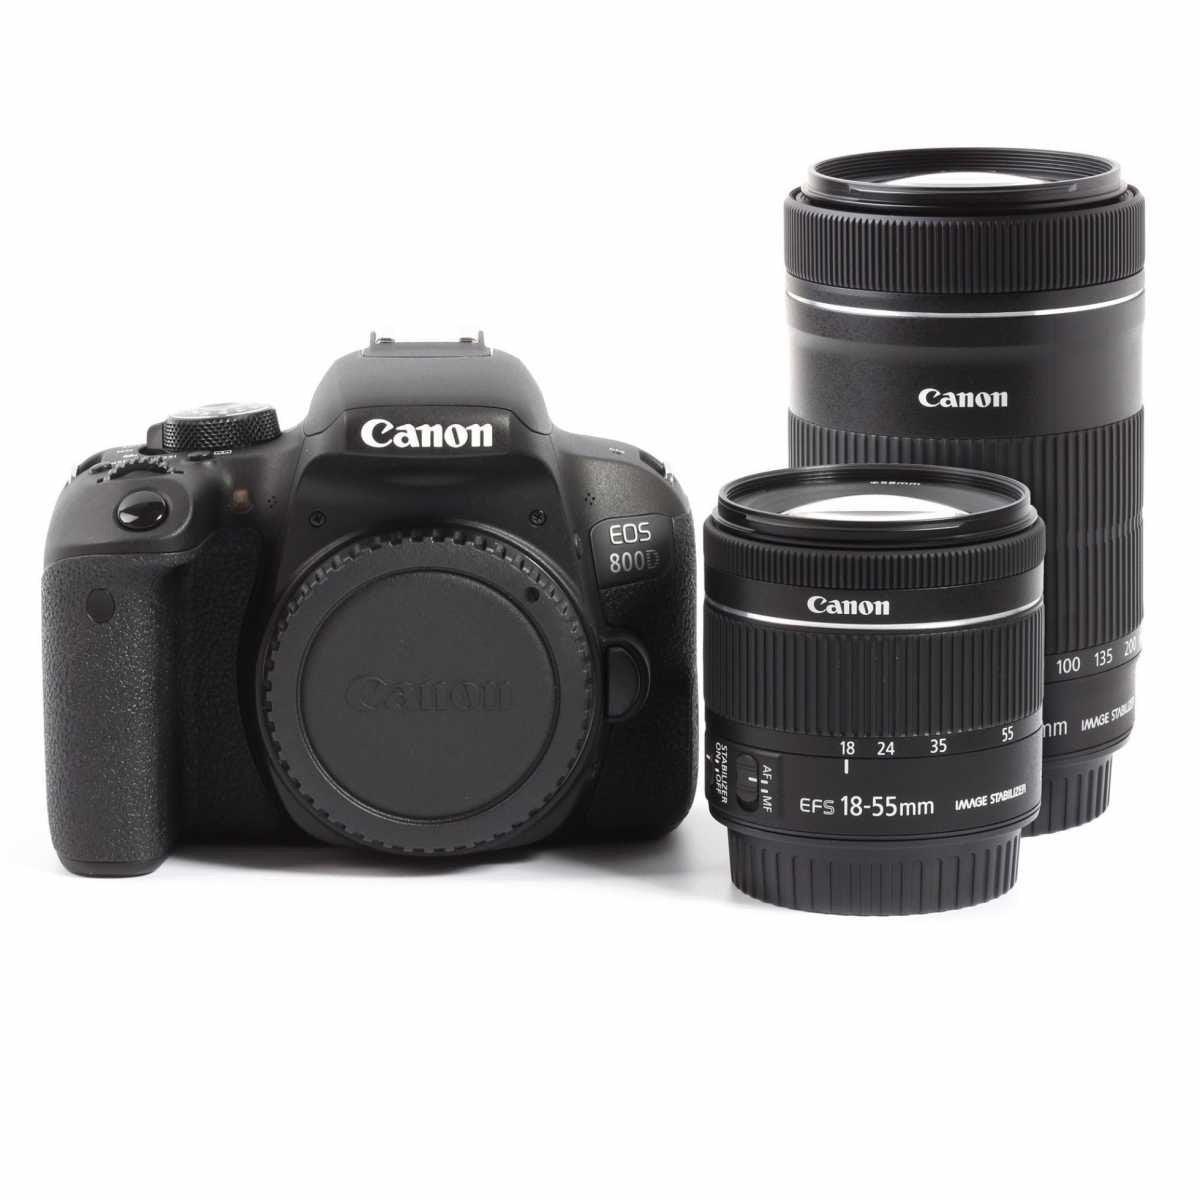 DSLR - Canon EOS 800D Digital SLR Camera + EF-S 18-55mm IS STM + EF-S 55-250mm IS STM Twin Kit